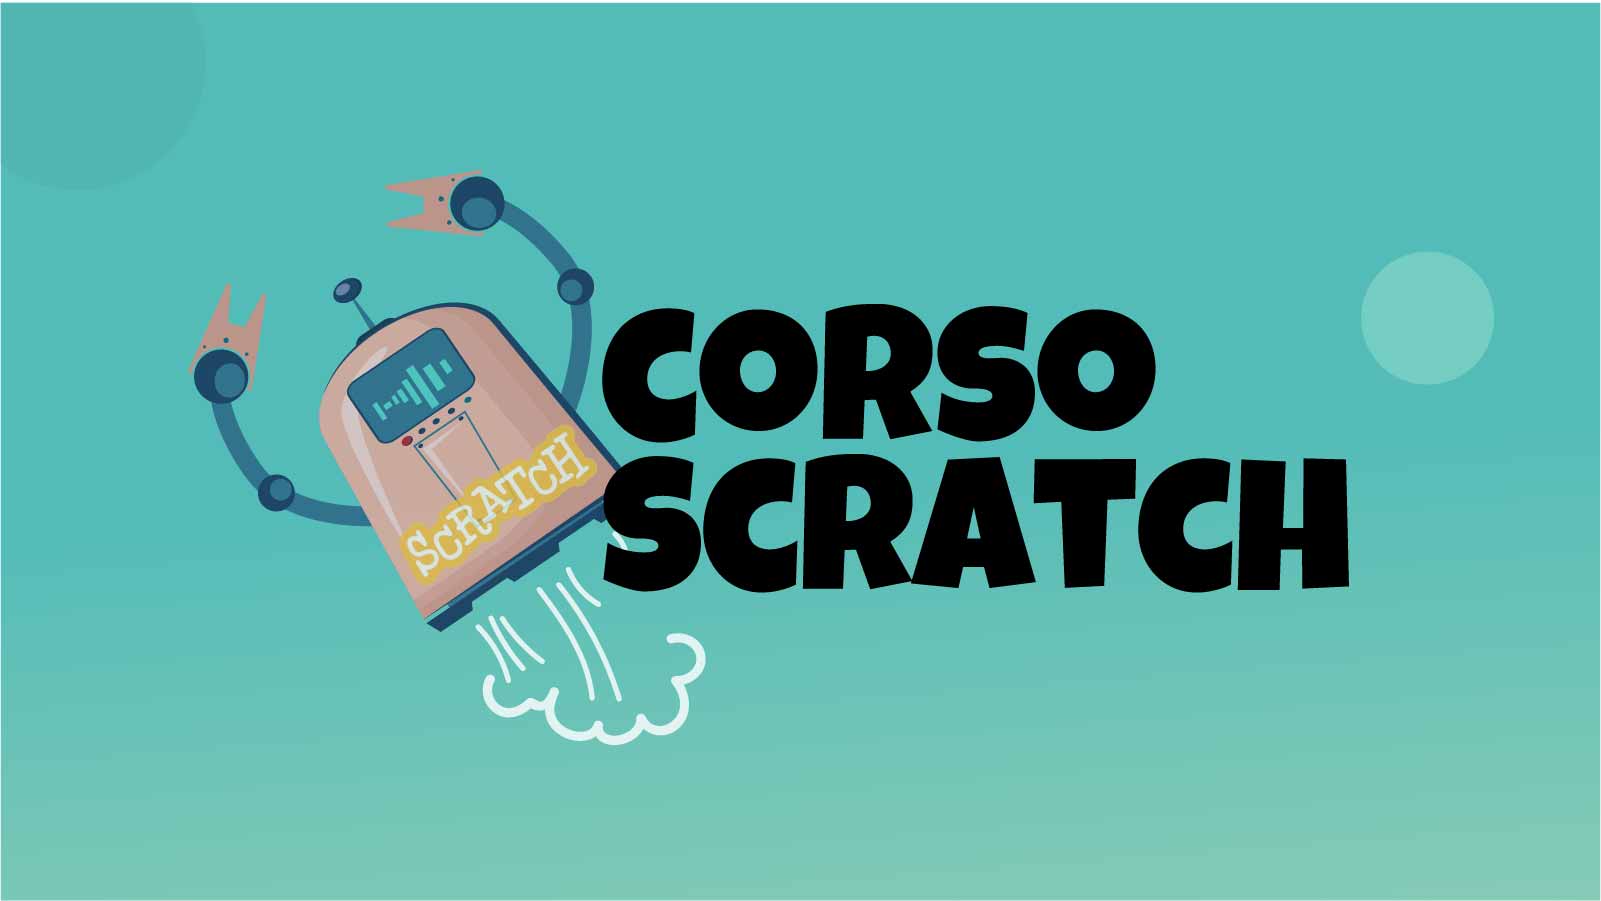 Corso di coding con Scratch 3.0 - Valdagno (VI)